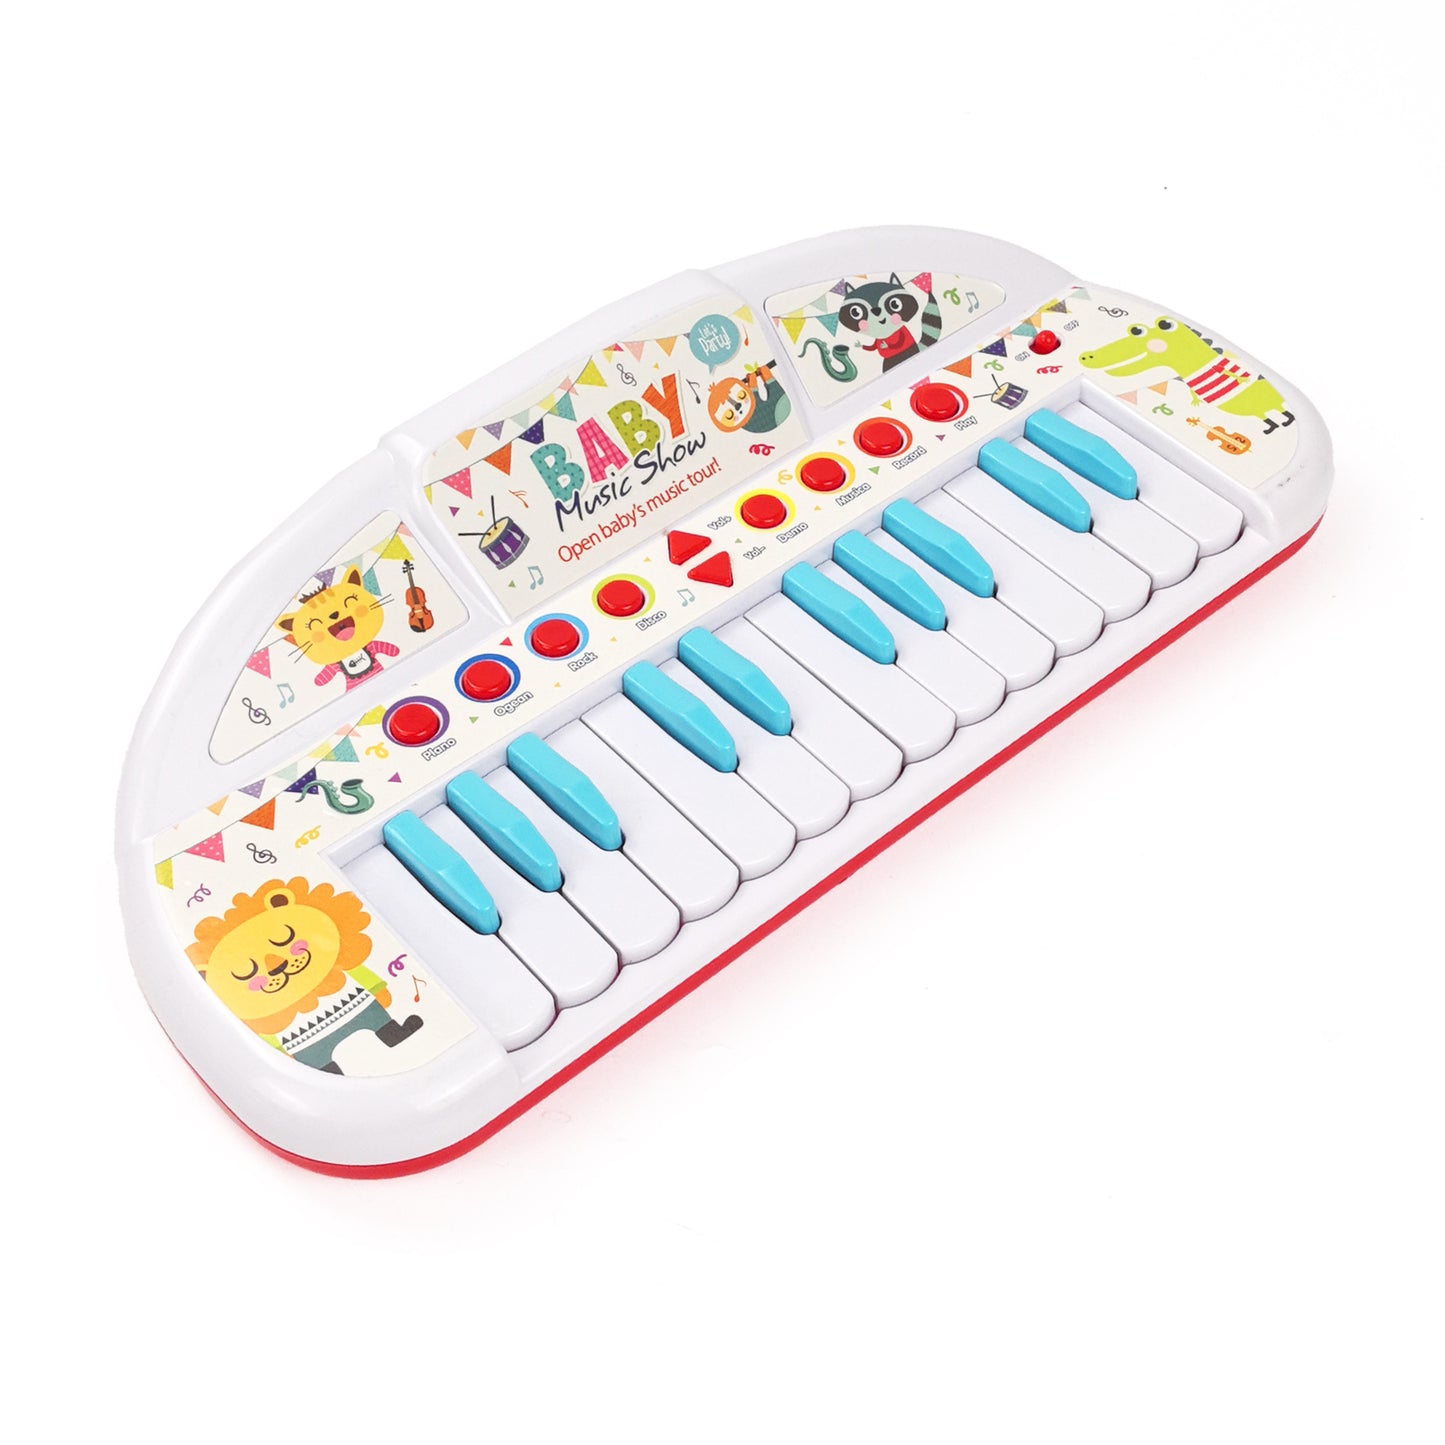 Juguetes de teclado electrónico luminosos, juguetes de teclado electrónico para niños, juguetes musicales, juguetes de iluminación de interés 